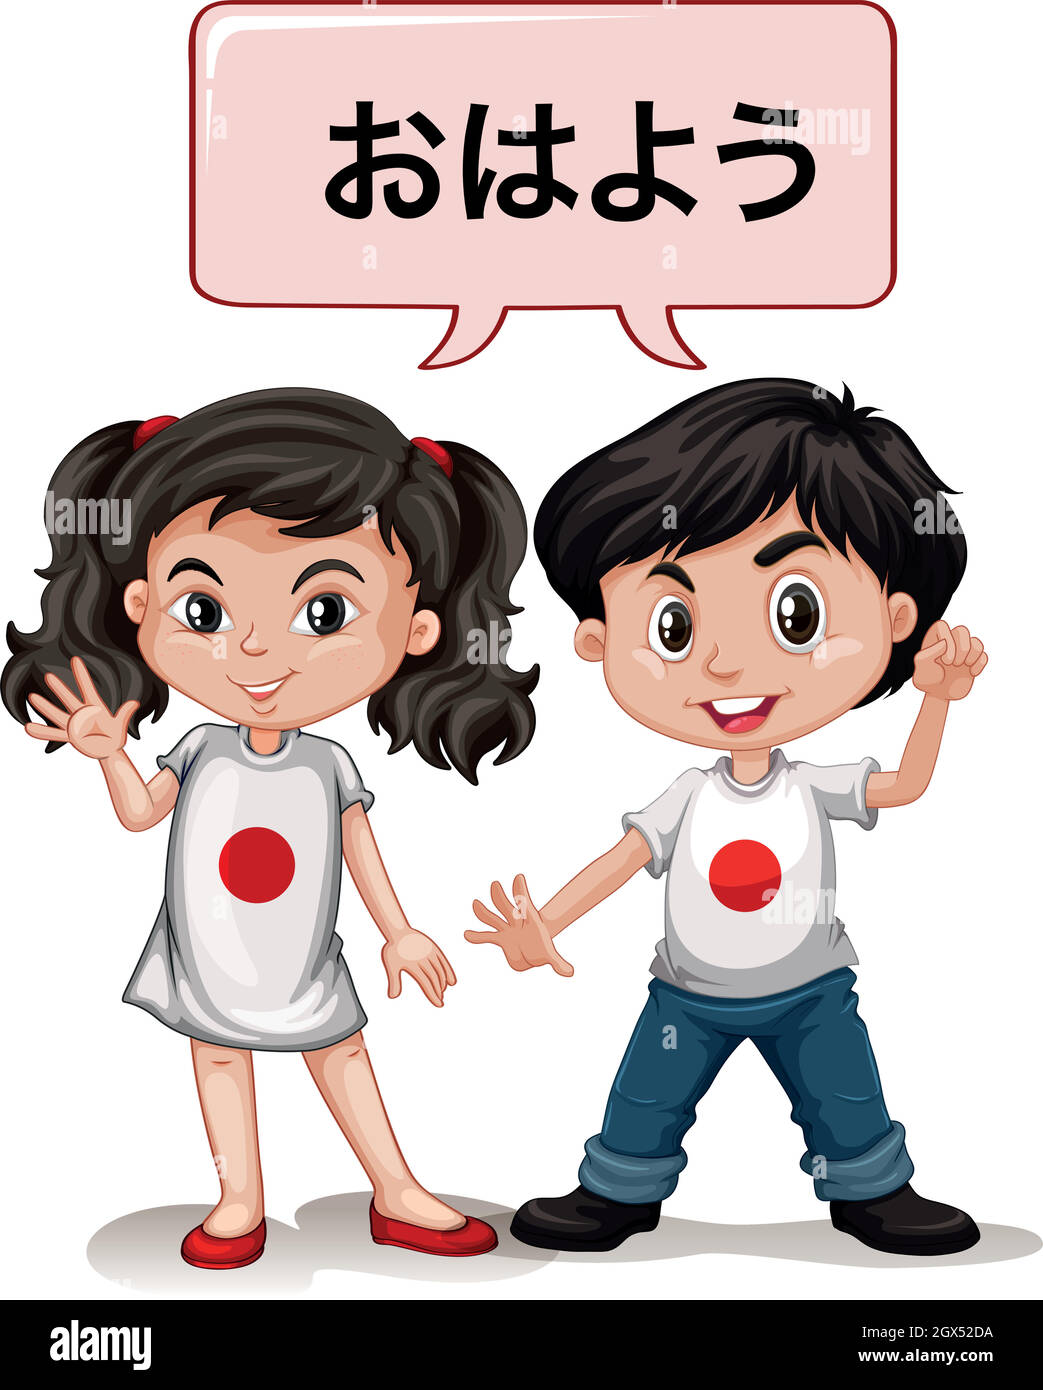 Un garçon et une fille japonais qui disent bonjour Illustration de Vecteur